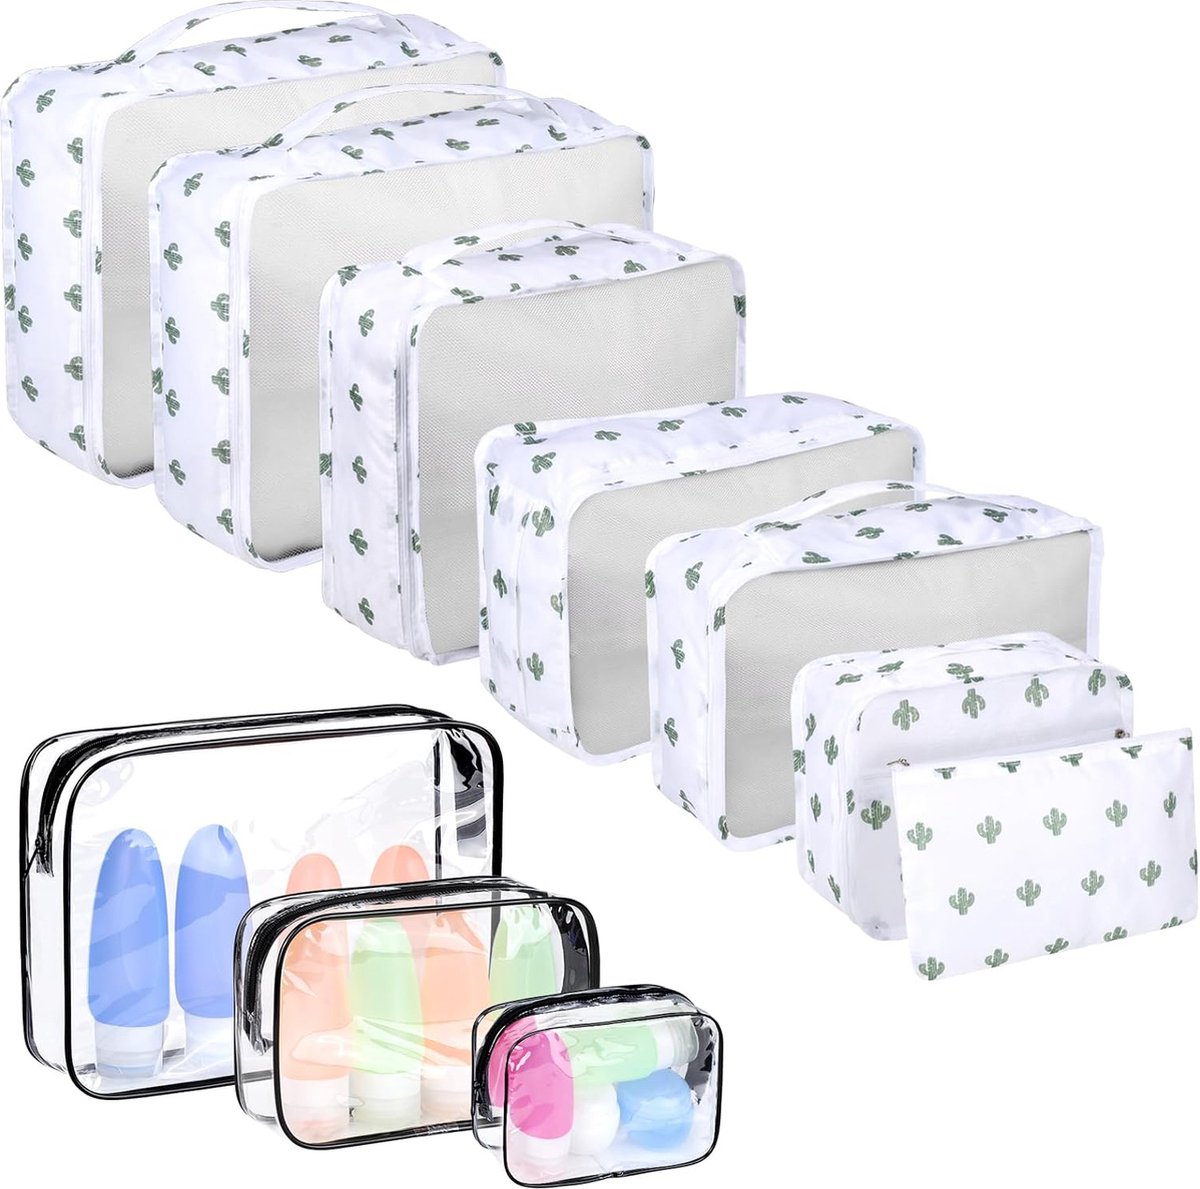 8 Pcs Cubes D'emballage Pour Valise Bagages Légers Emballage Organisateurs  Emballages Cubes Pour Accessoires De Voyage